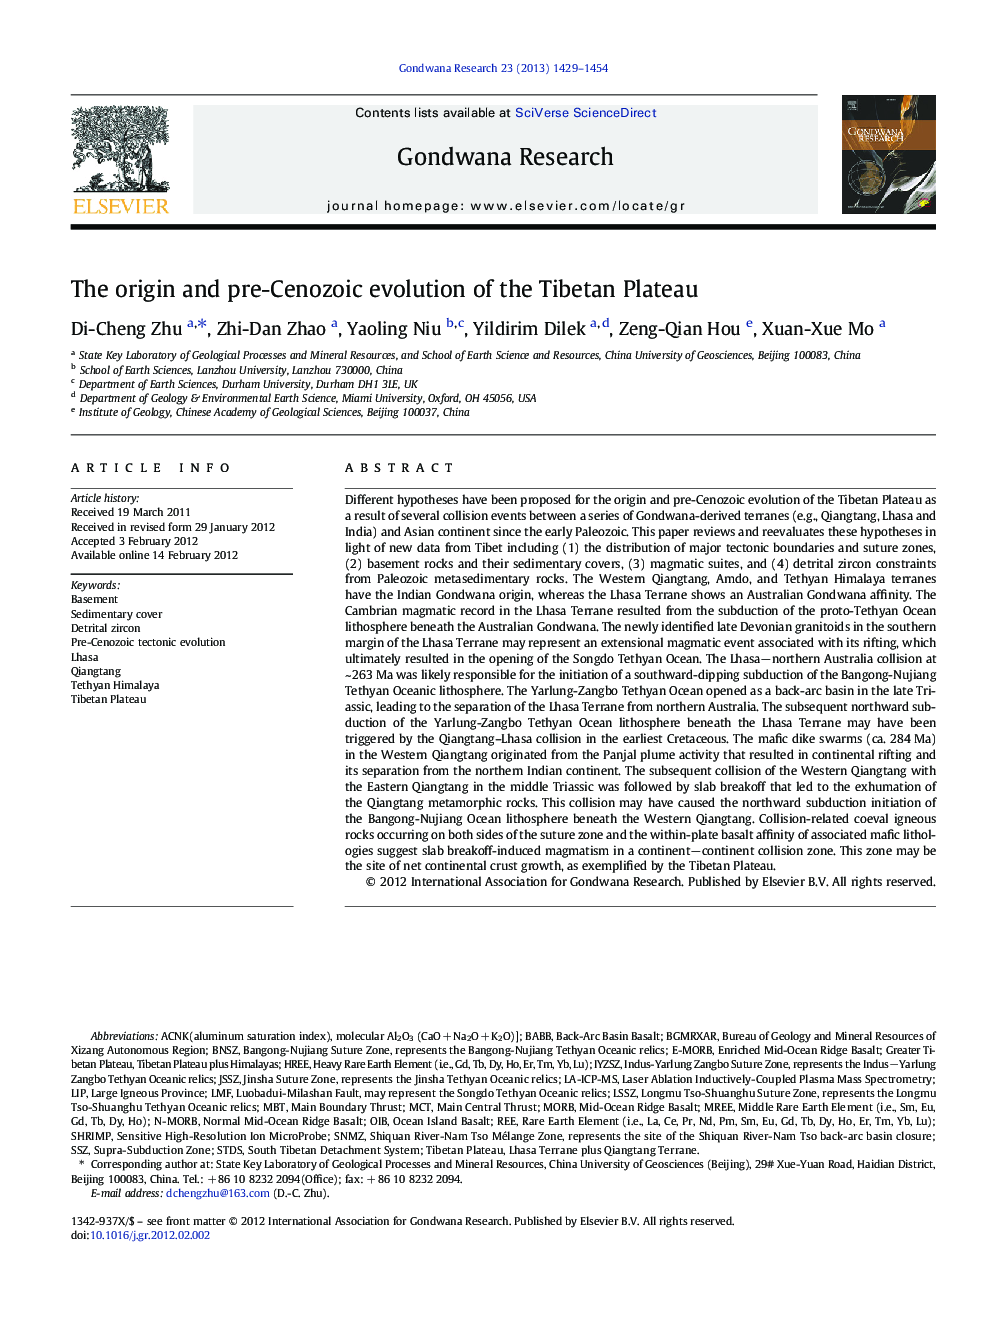 The origin and pre-Cenozoic evolution of the Tibetan Plateau